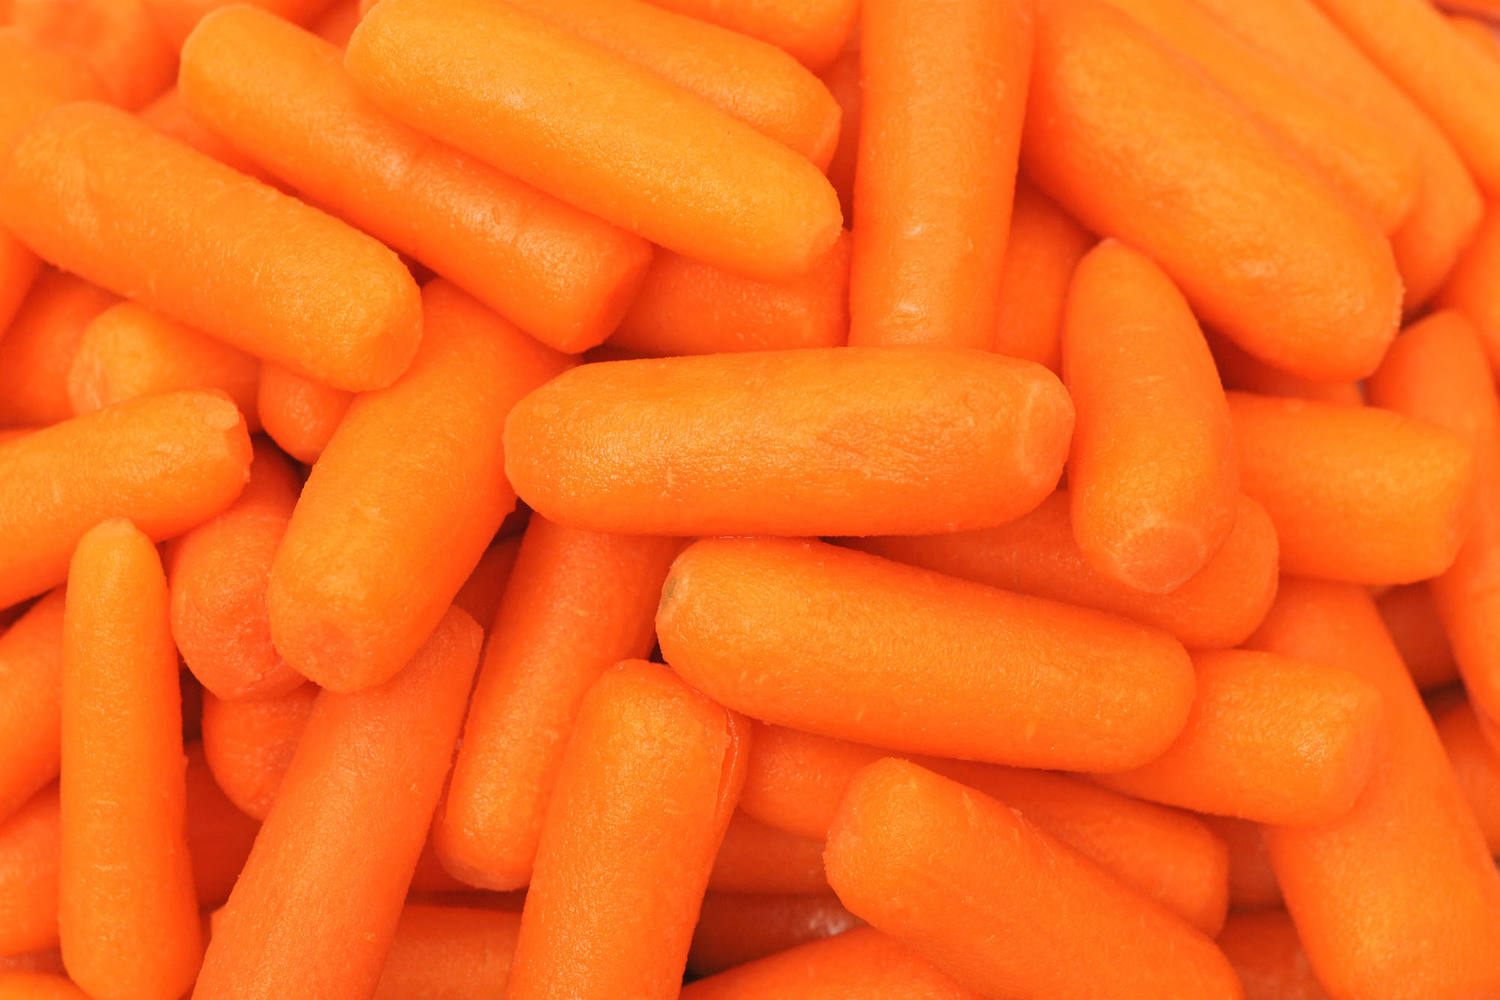 Baby carrots medium 1kg crade 8 pieces 3